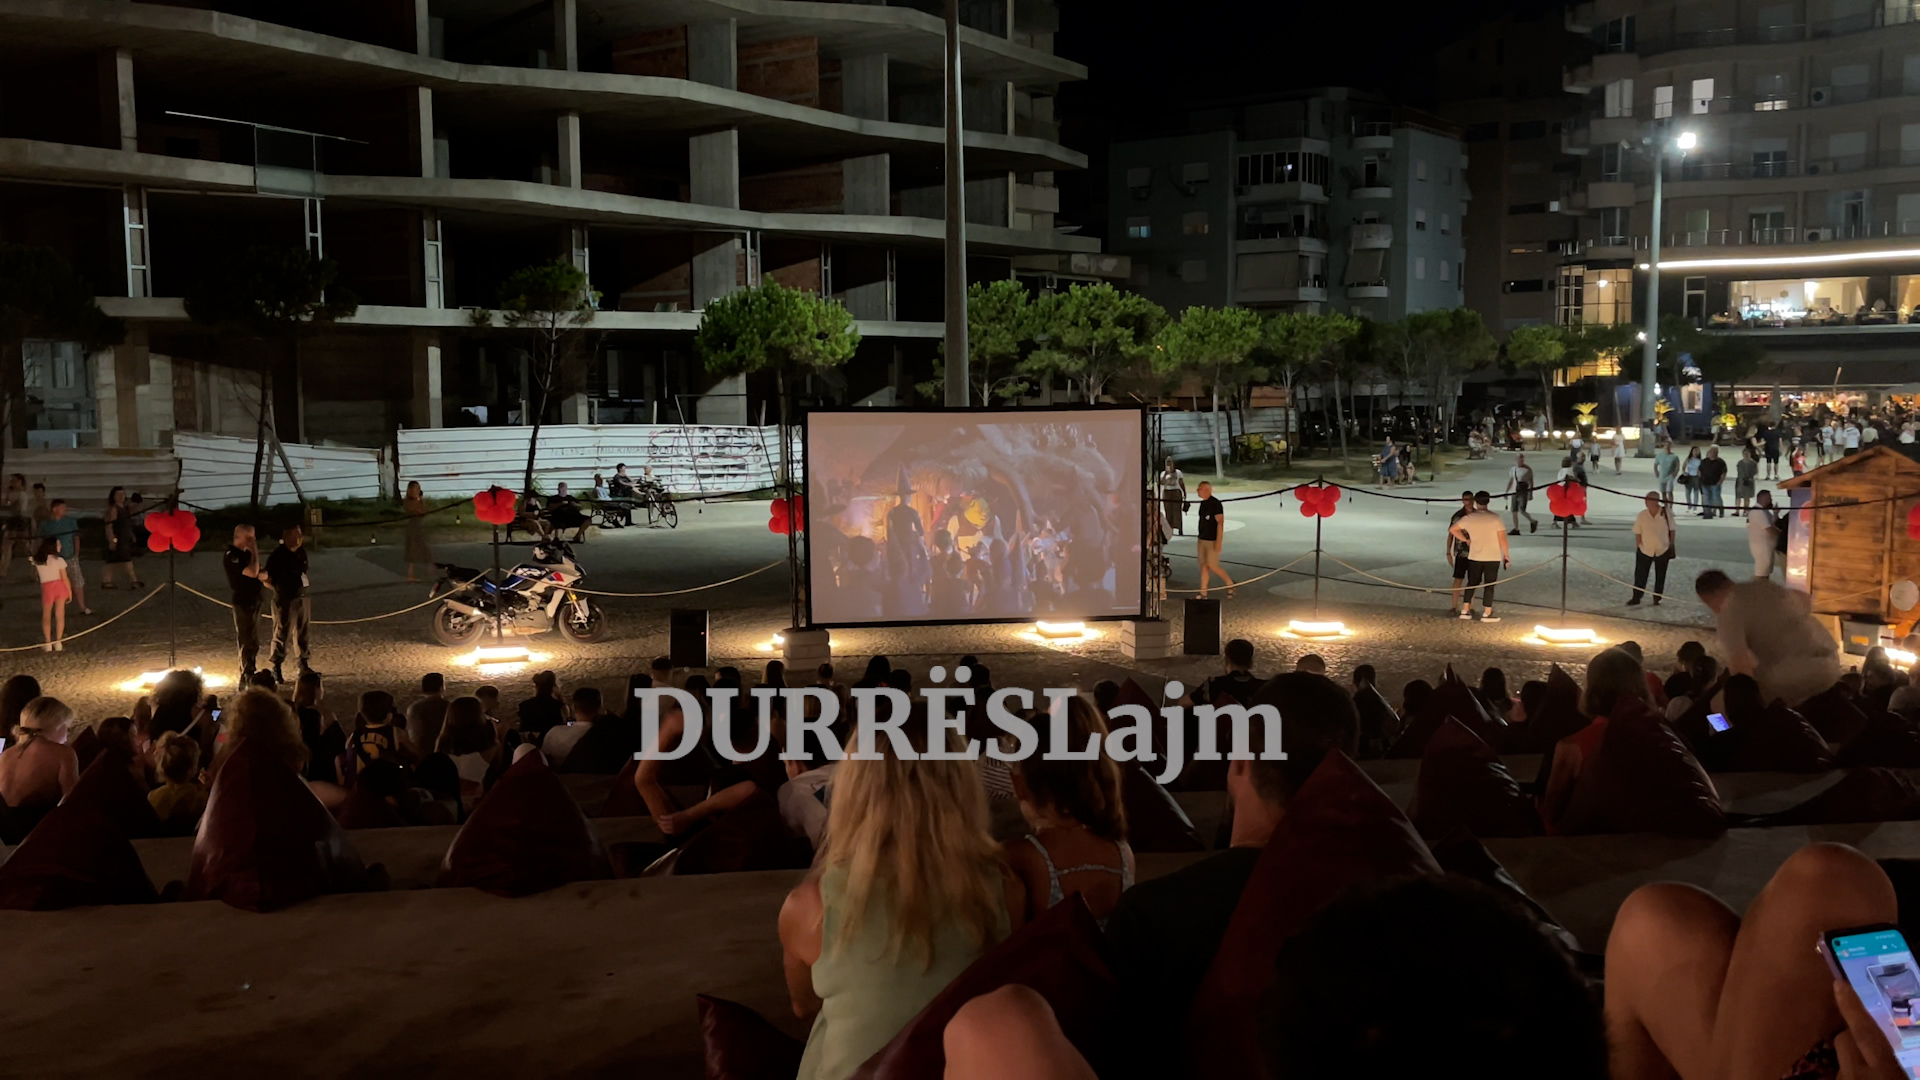 Hapet kinemaja verore në Durrës, 2 filma në natë për fëmijët dhe të rriturit (VIDEO)